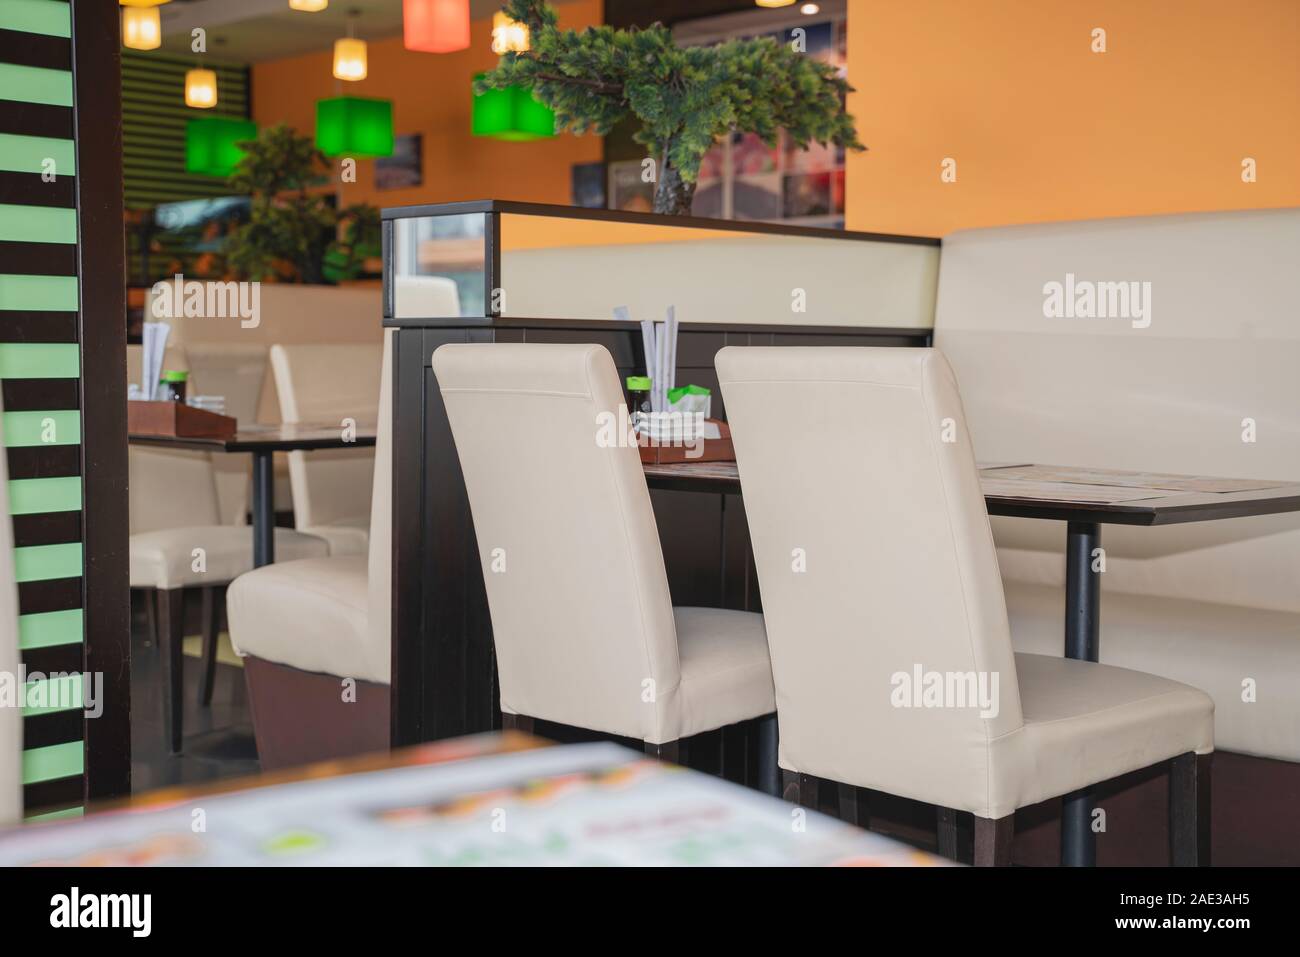 Fragment intérieur Café, vue sur table et chaises blanches sur fond de mur orange. Café est décoré avec des lampes multicolores et greenary Banque D'Images